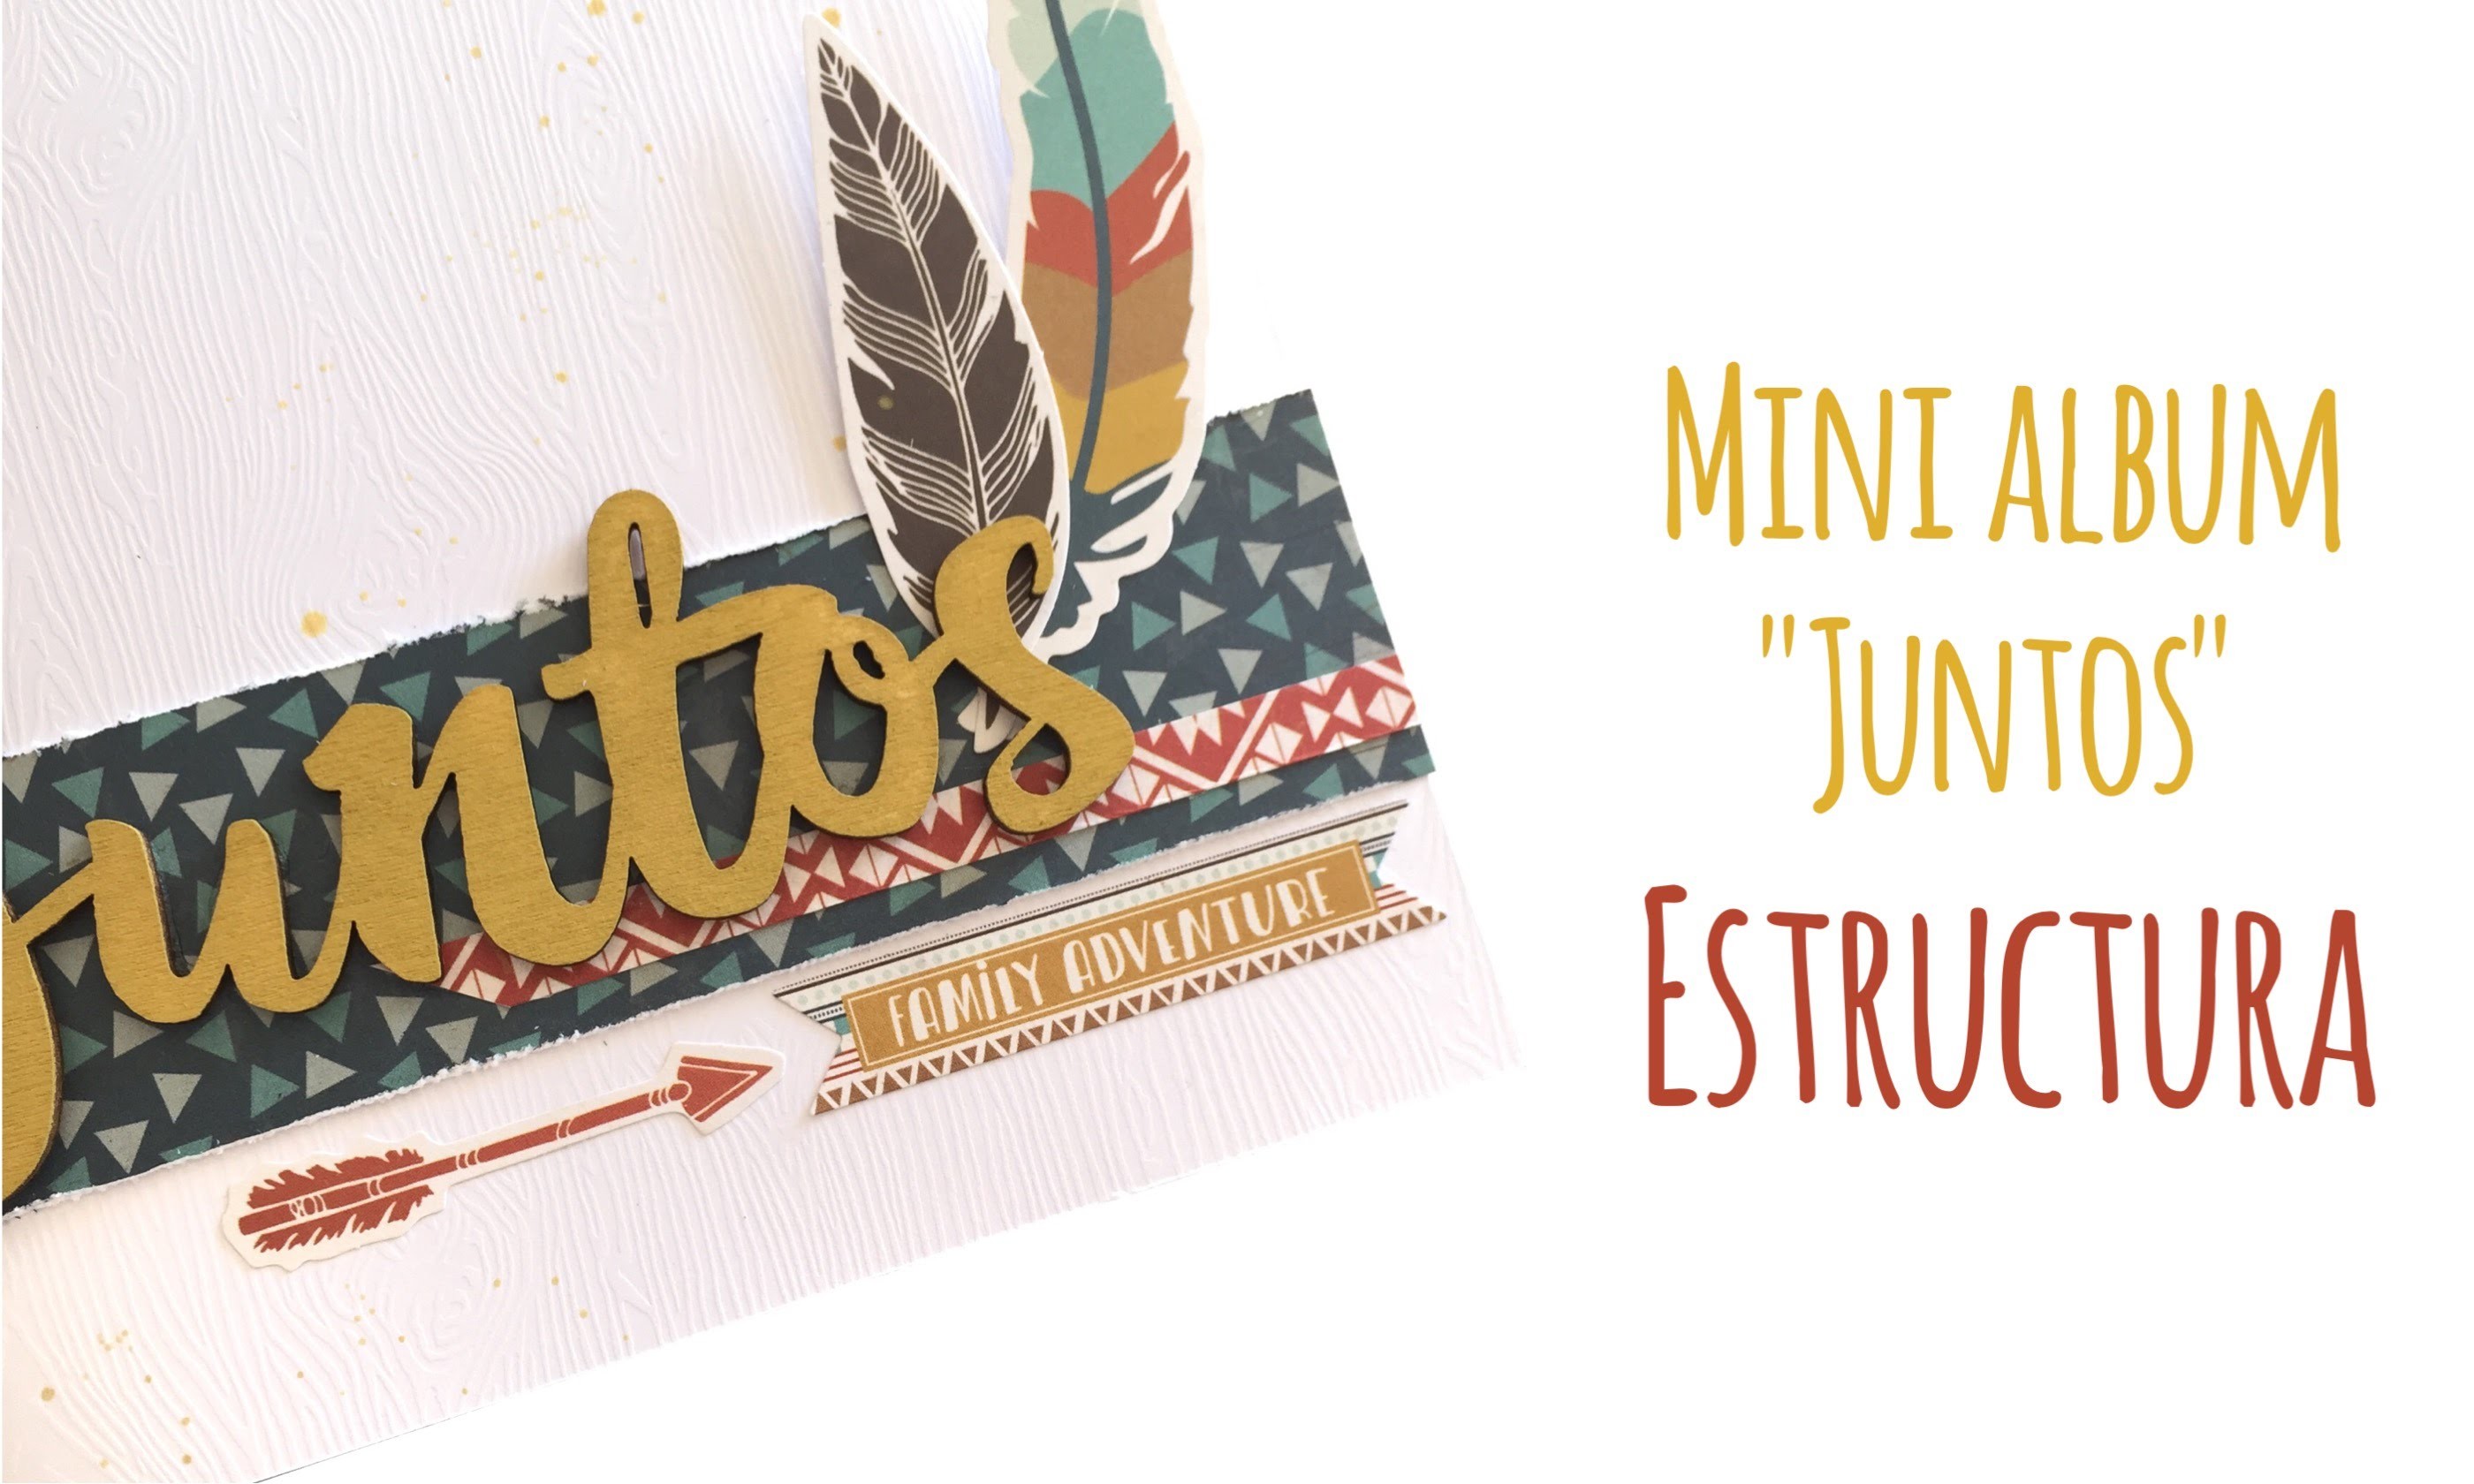 Mini album "Juntos" - Estructura - TUTORIAL Scrapbook